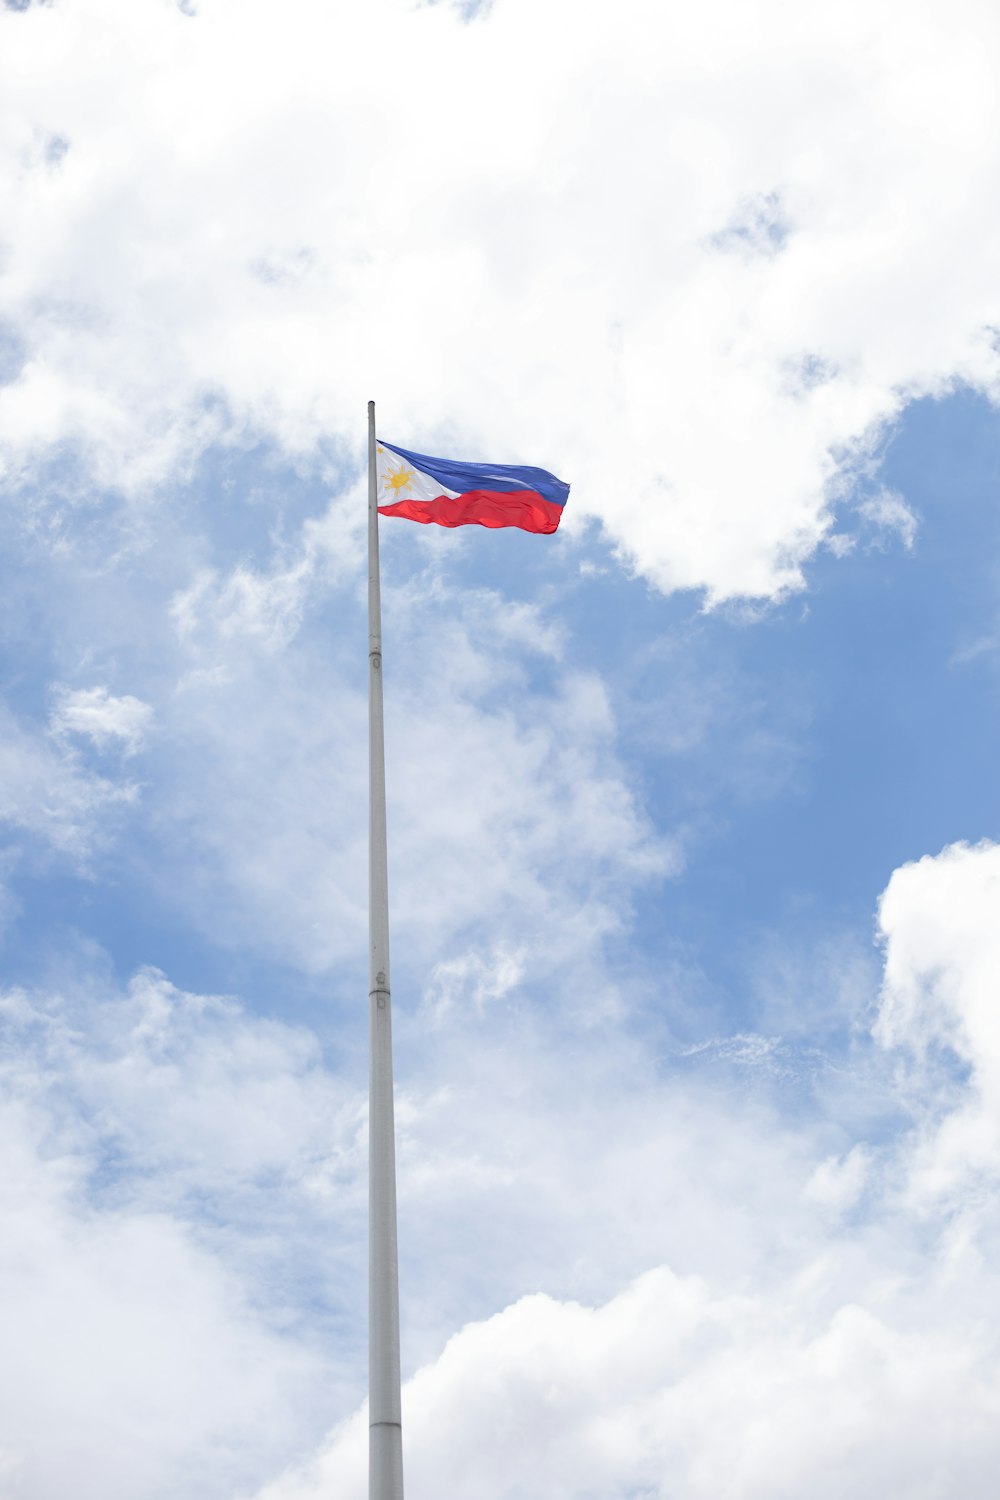 필리핀의 국기